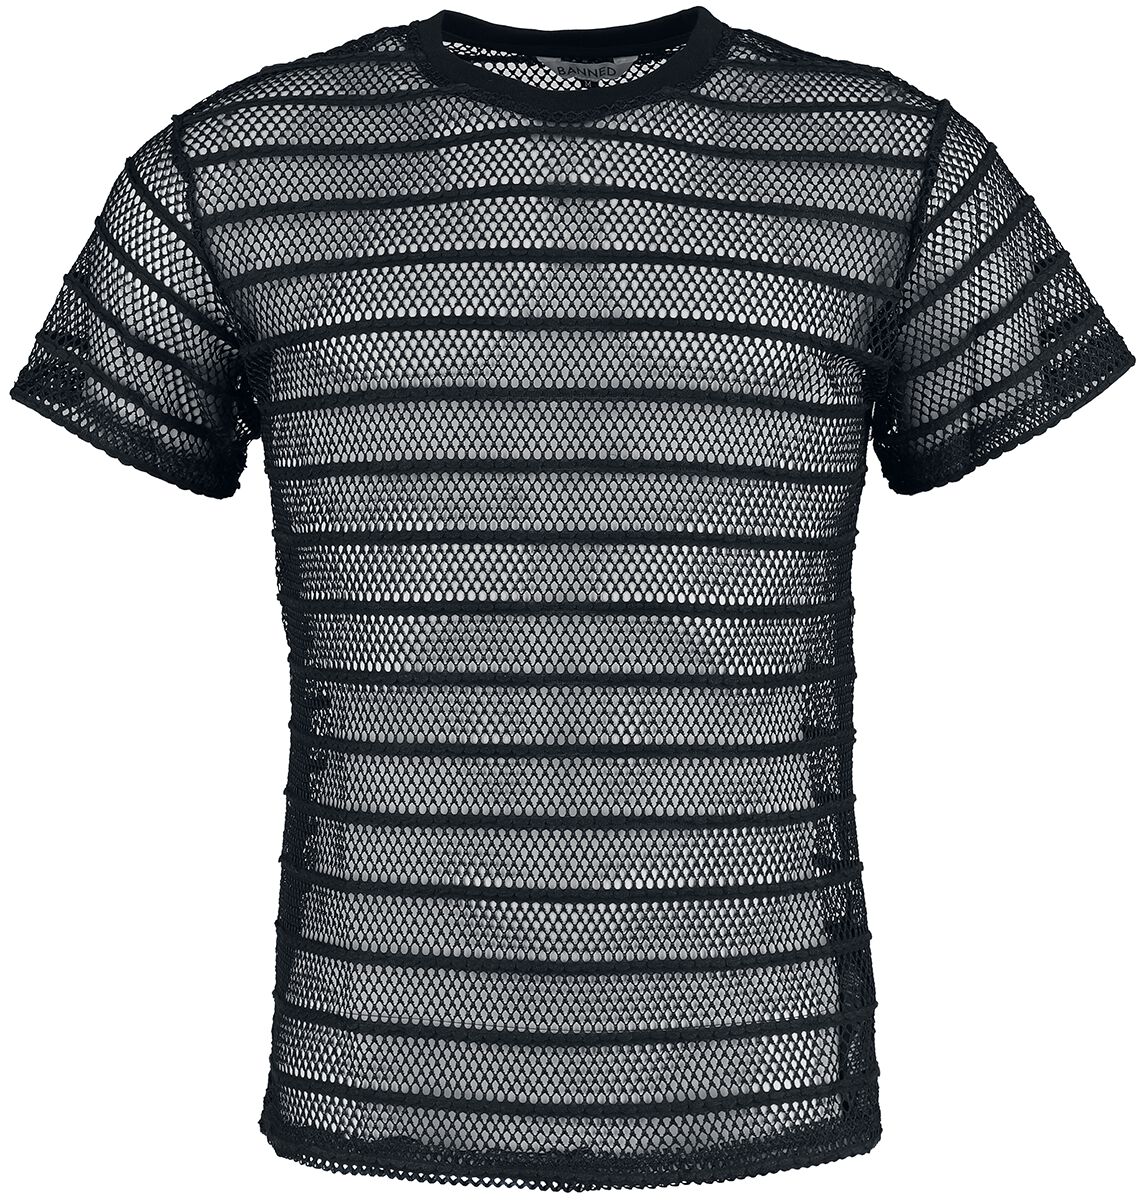 Banned Alternative - Gothic T-Shirt - Black Mesh Shirt - S bis XXL - für Männer - Größe XL - schwarz